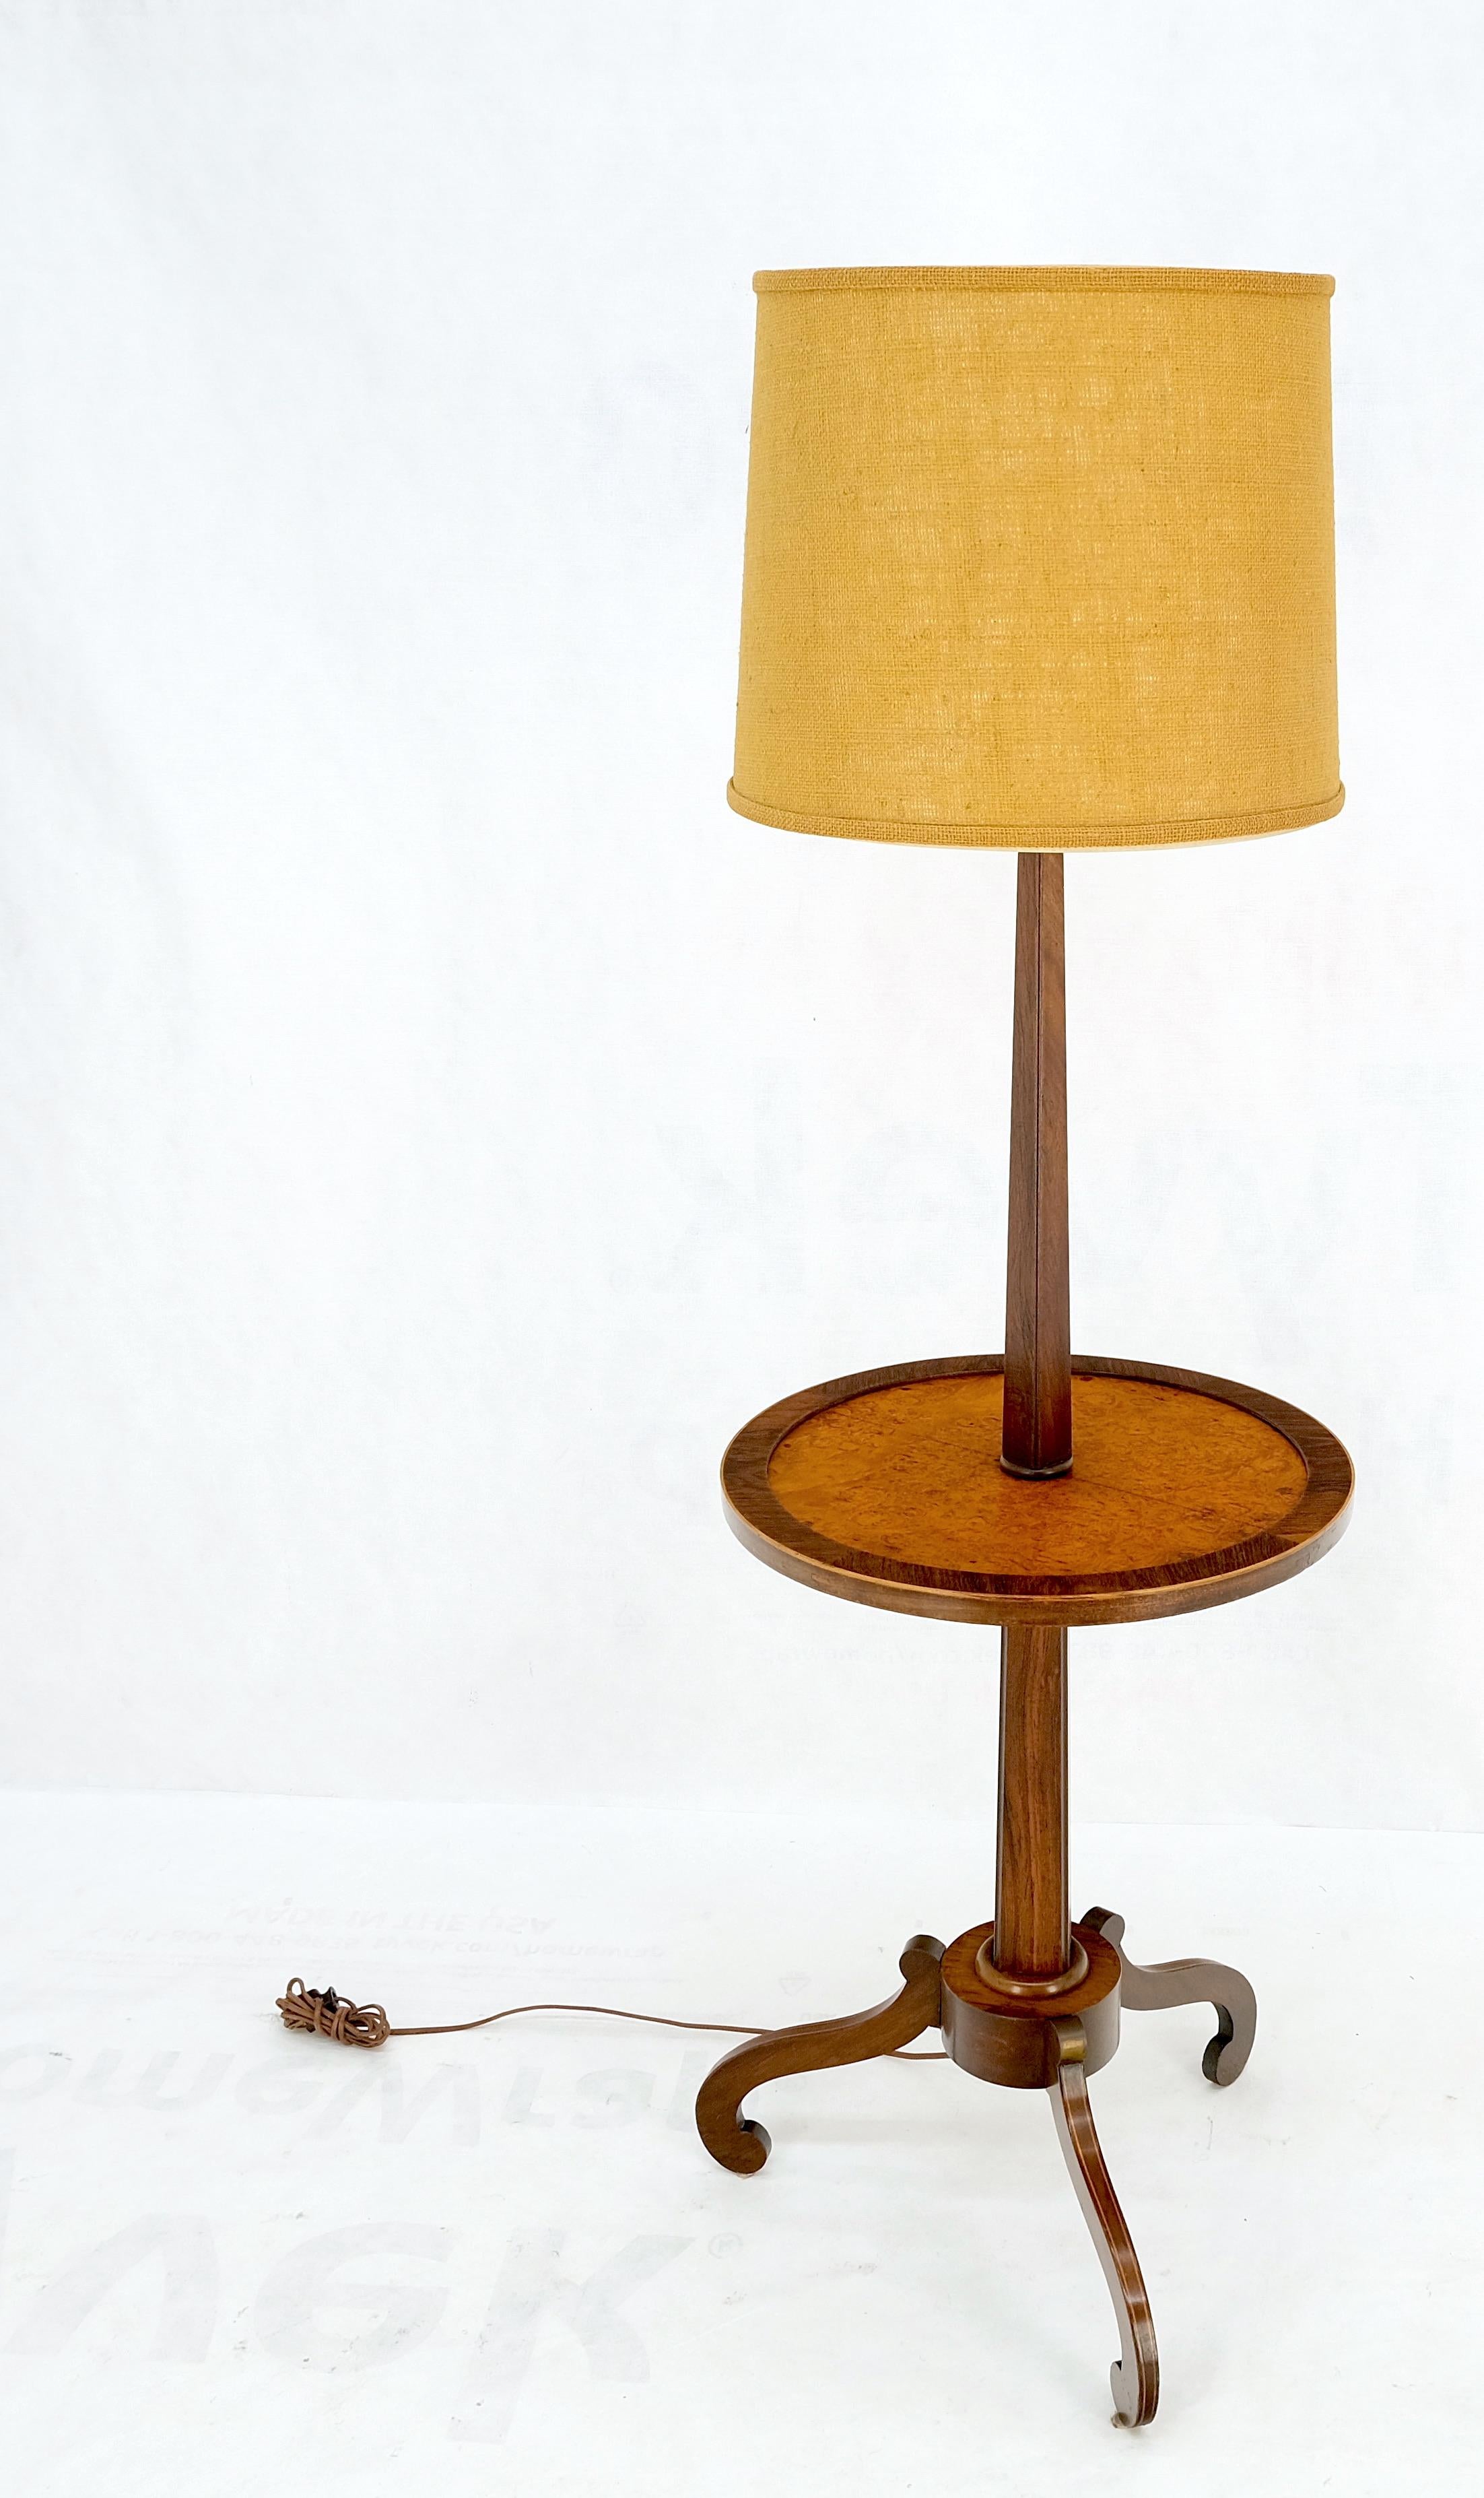 Rosewood & Burl Wood Tripod Base Side Table Regency Style Floor Lamp Mint In Good Condition For Sale In Rockaway, NJ